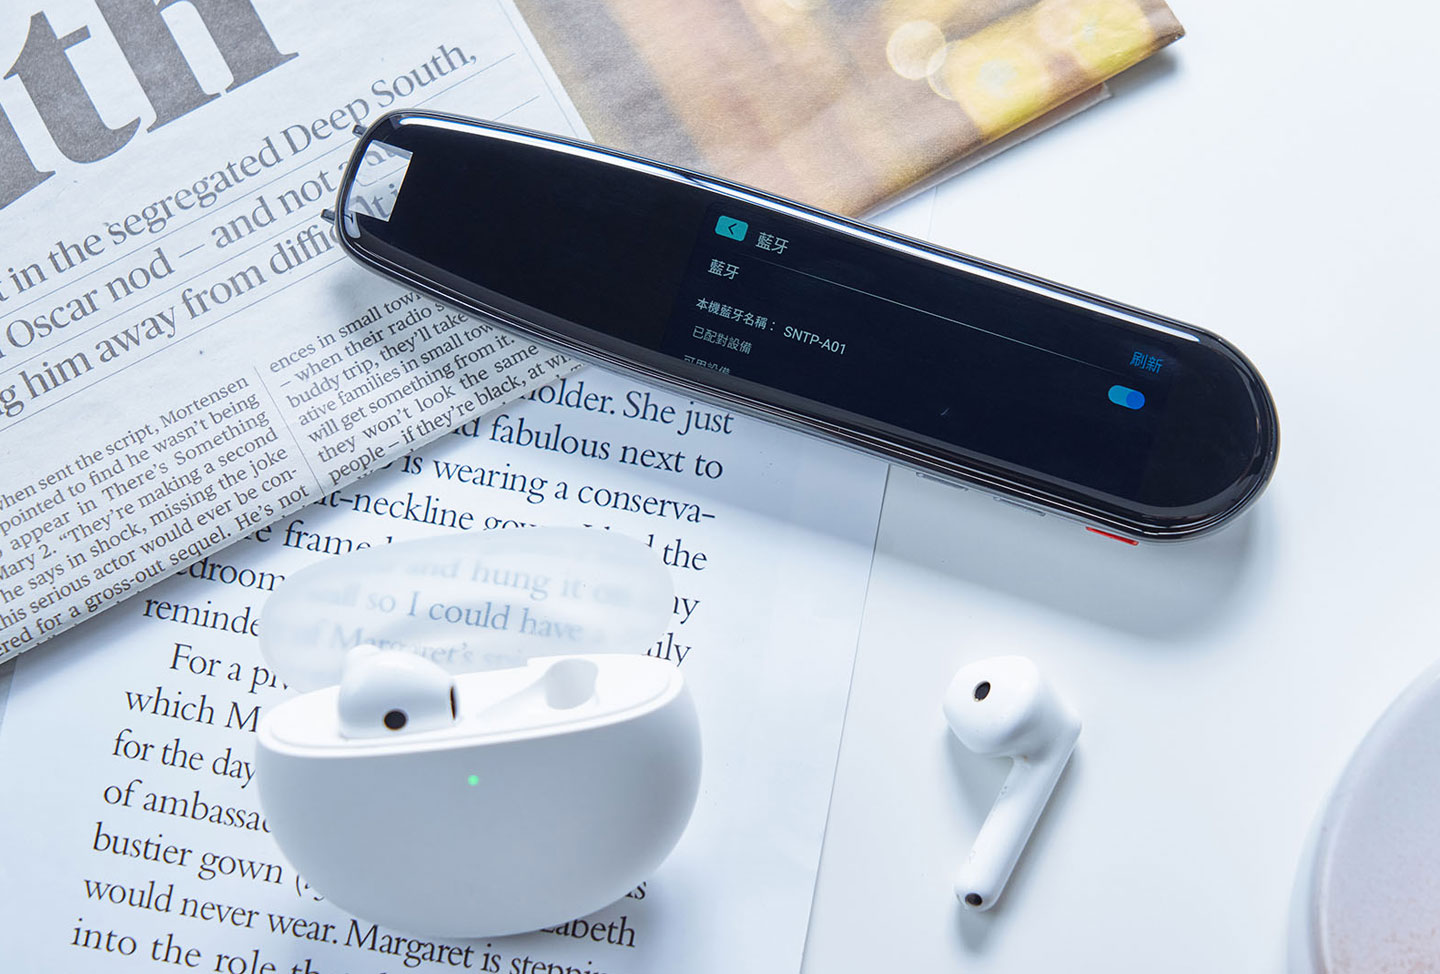 NovaPlus 智慧翻也內建藍牙連結能力，可以和藍牙耳機連線使用。